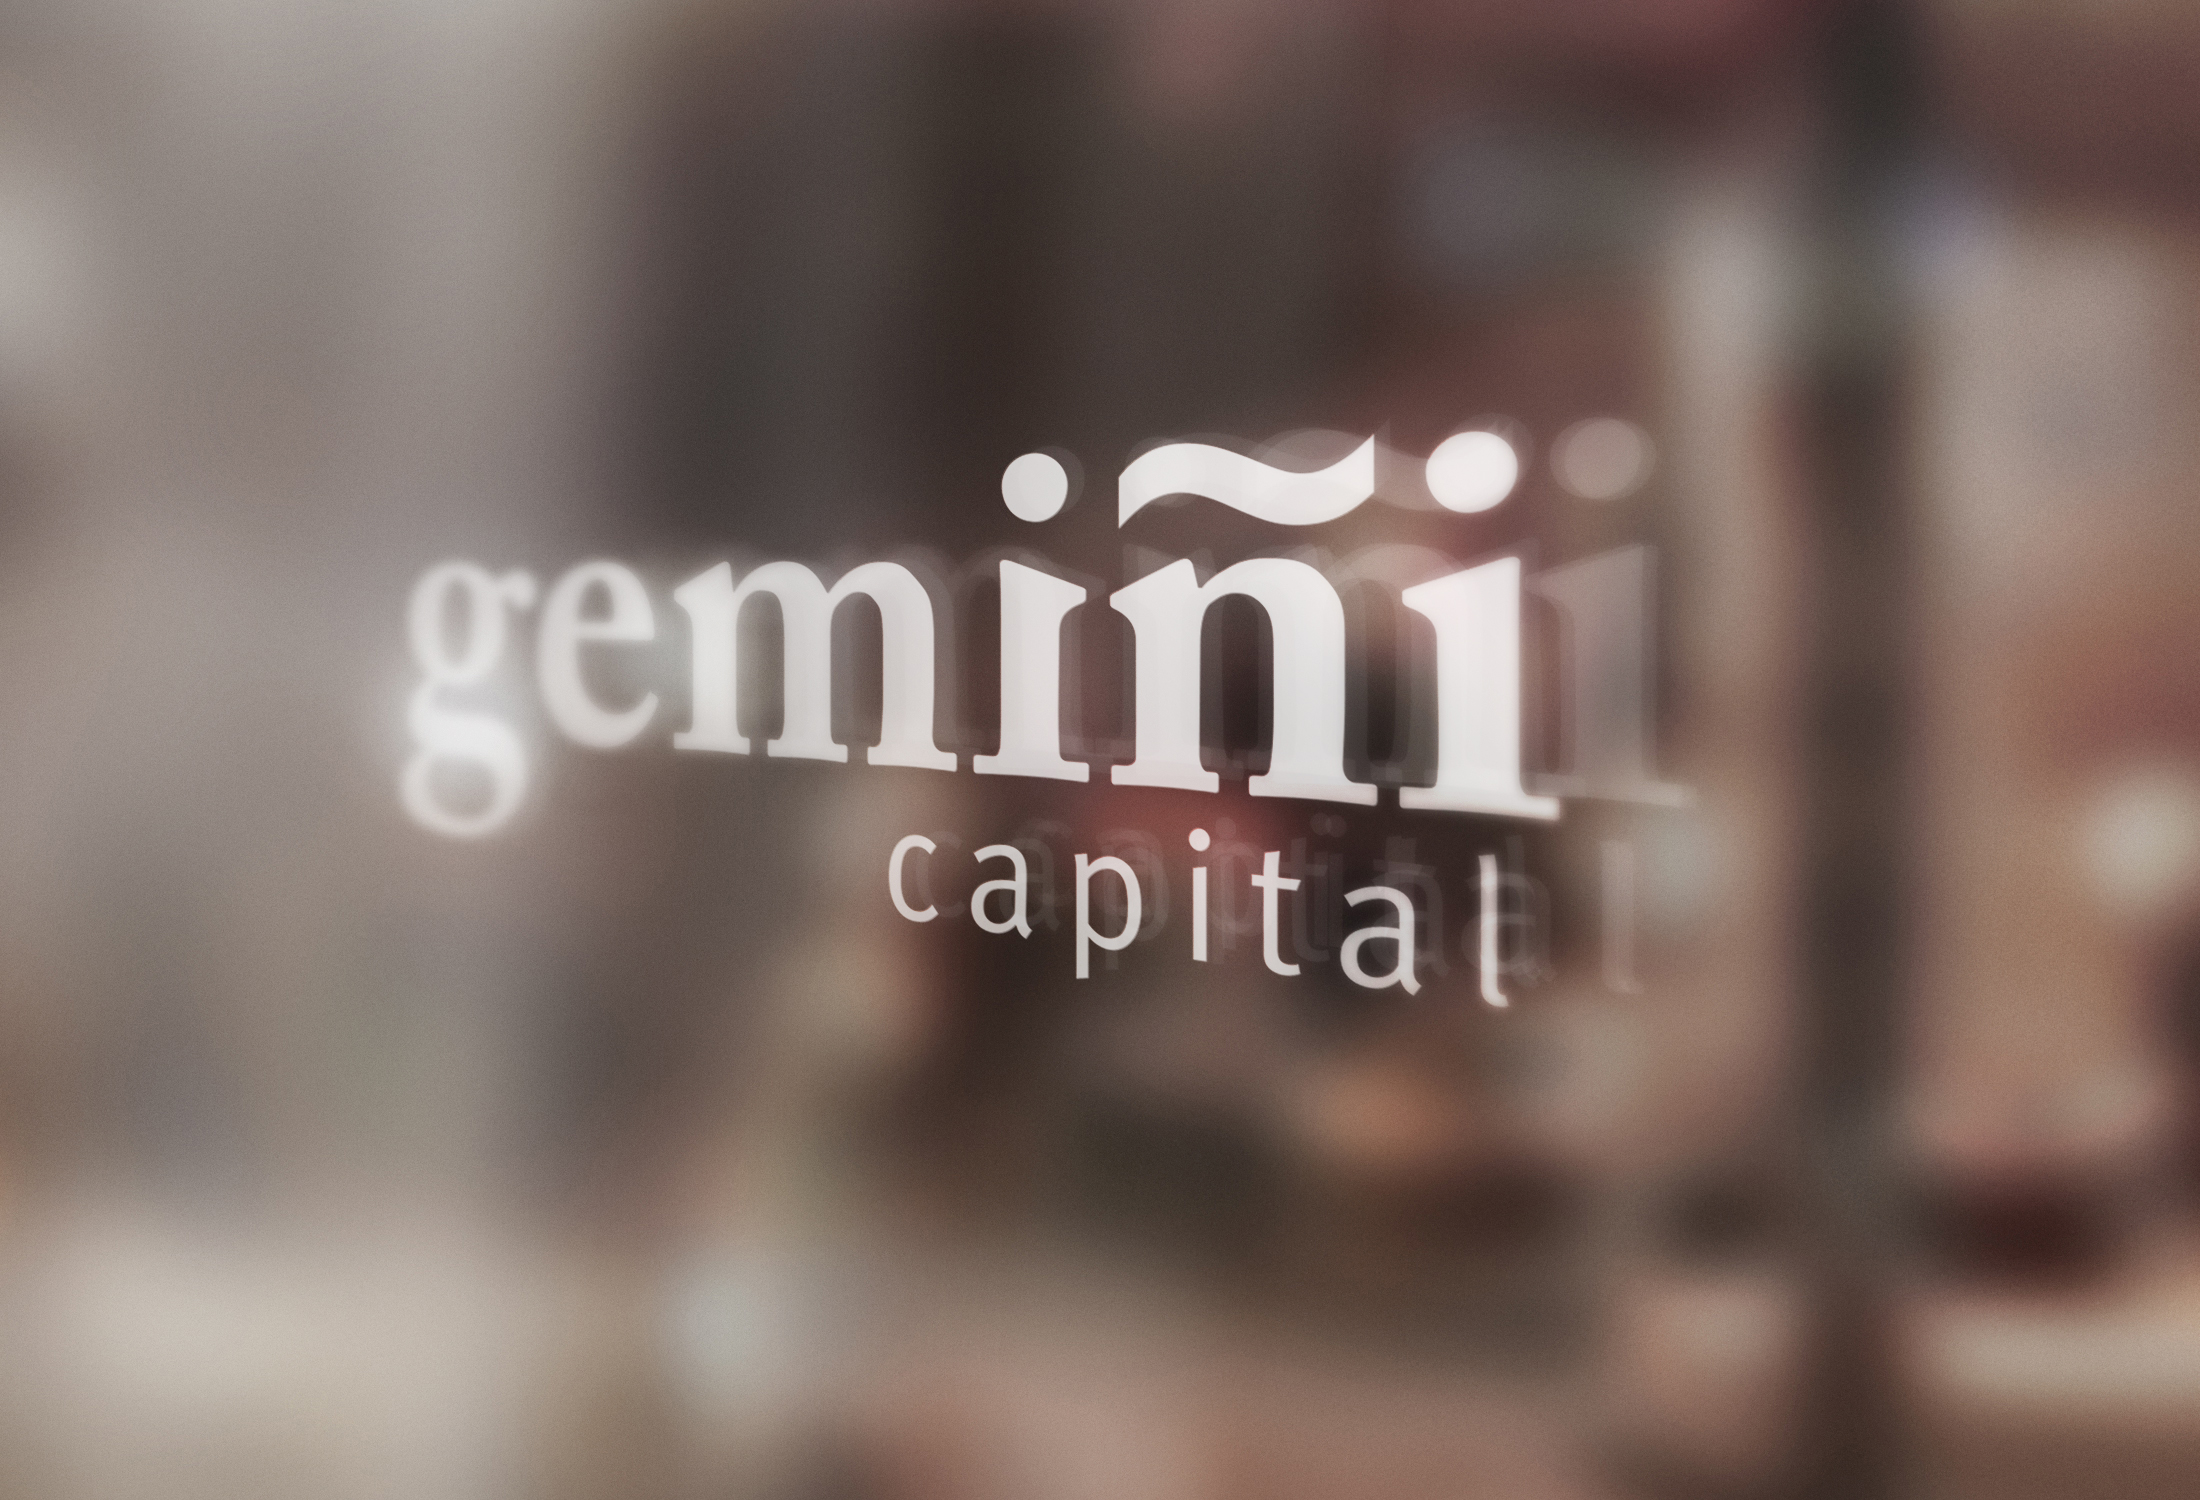 Gemini Capital